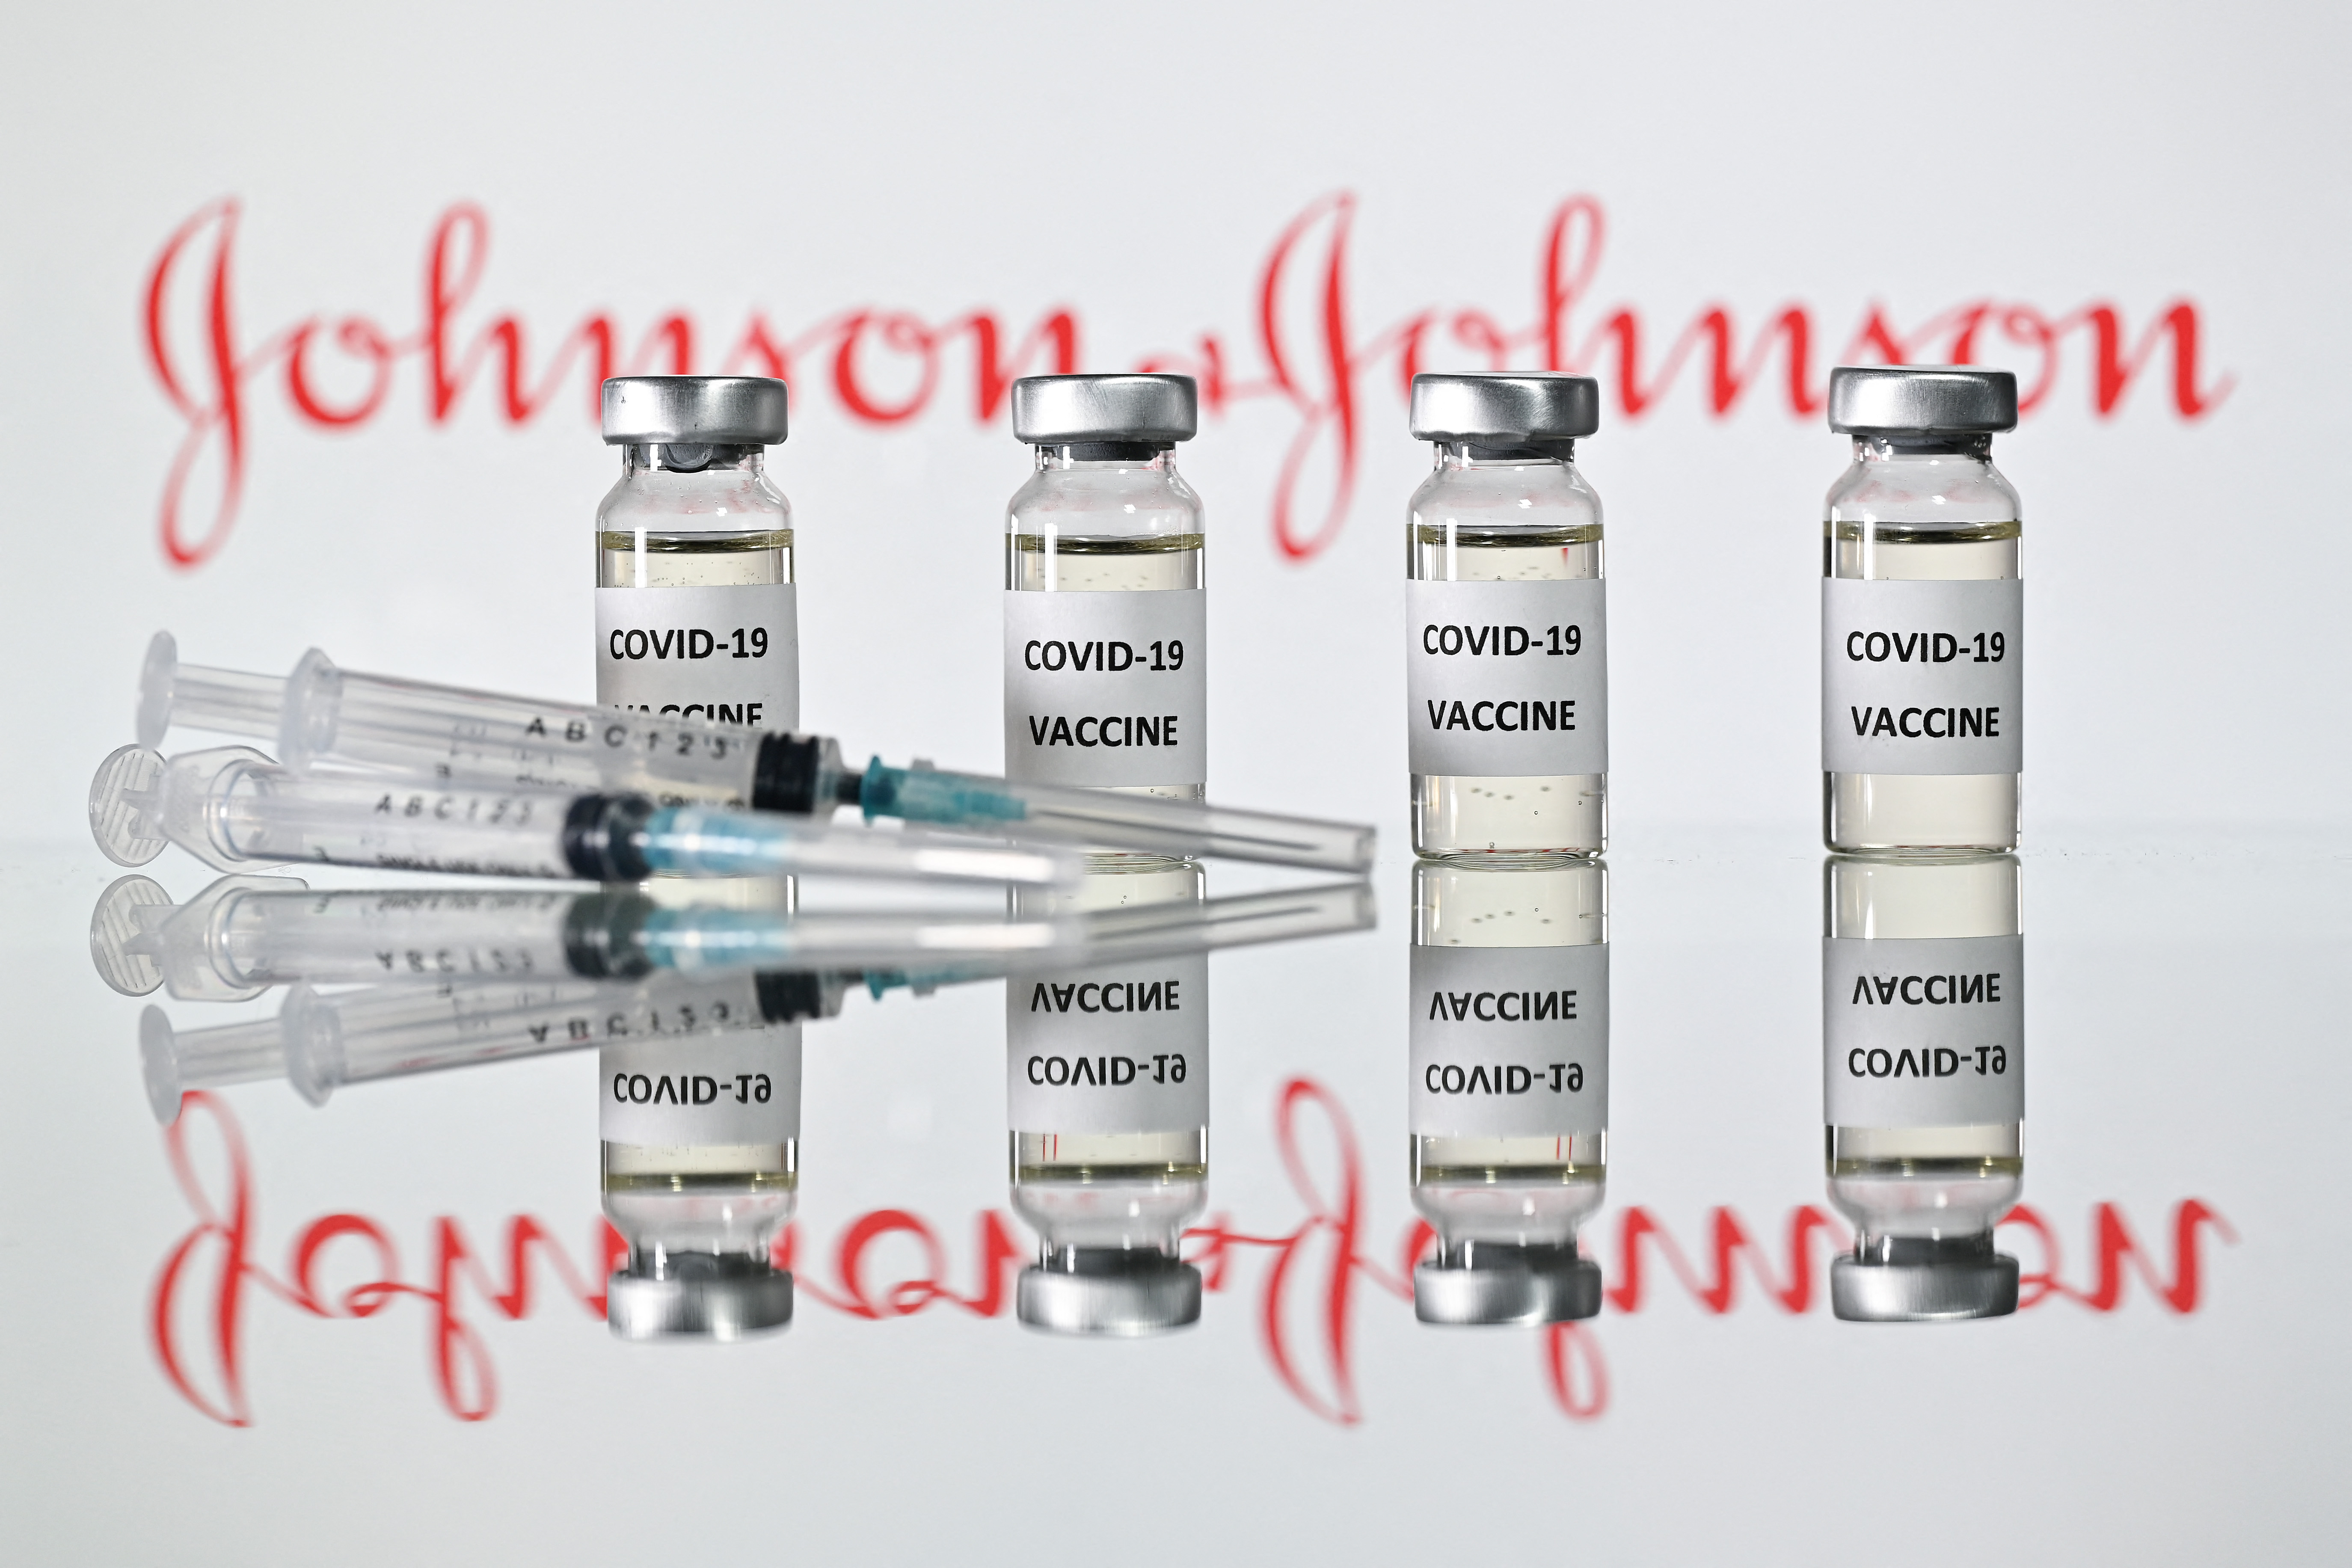 Nagyon ritka mellékhatásnak minősítette a vérrögképződést az Európai Gyógyszerügynökség a Johnson & Johnson vakcinájánál